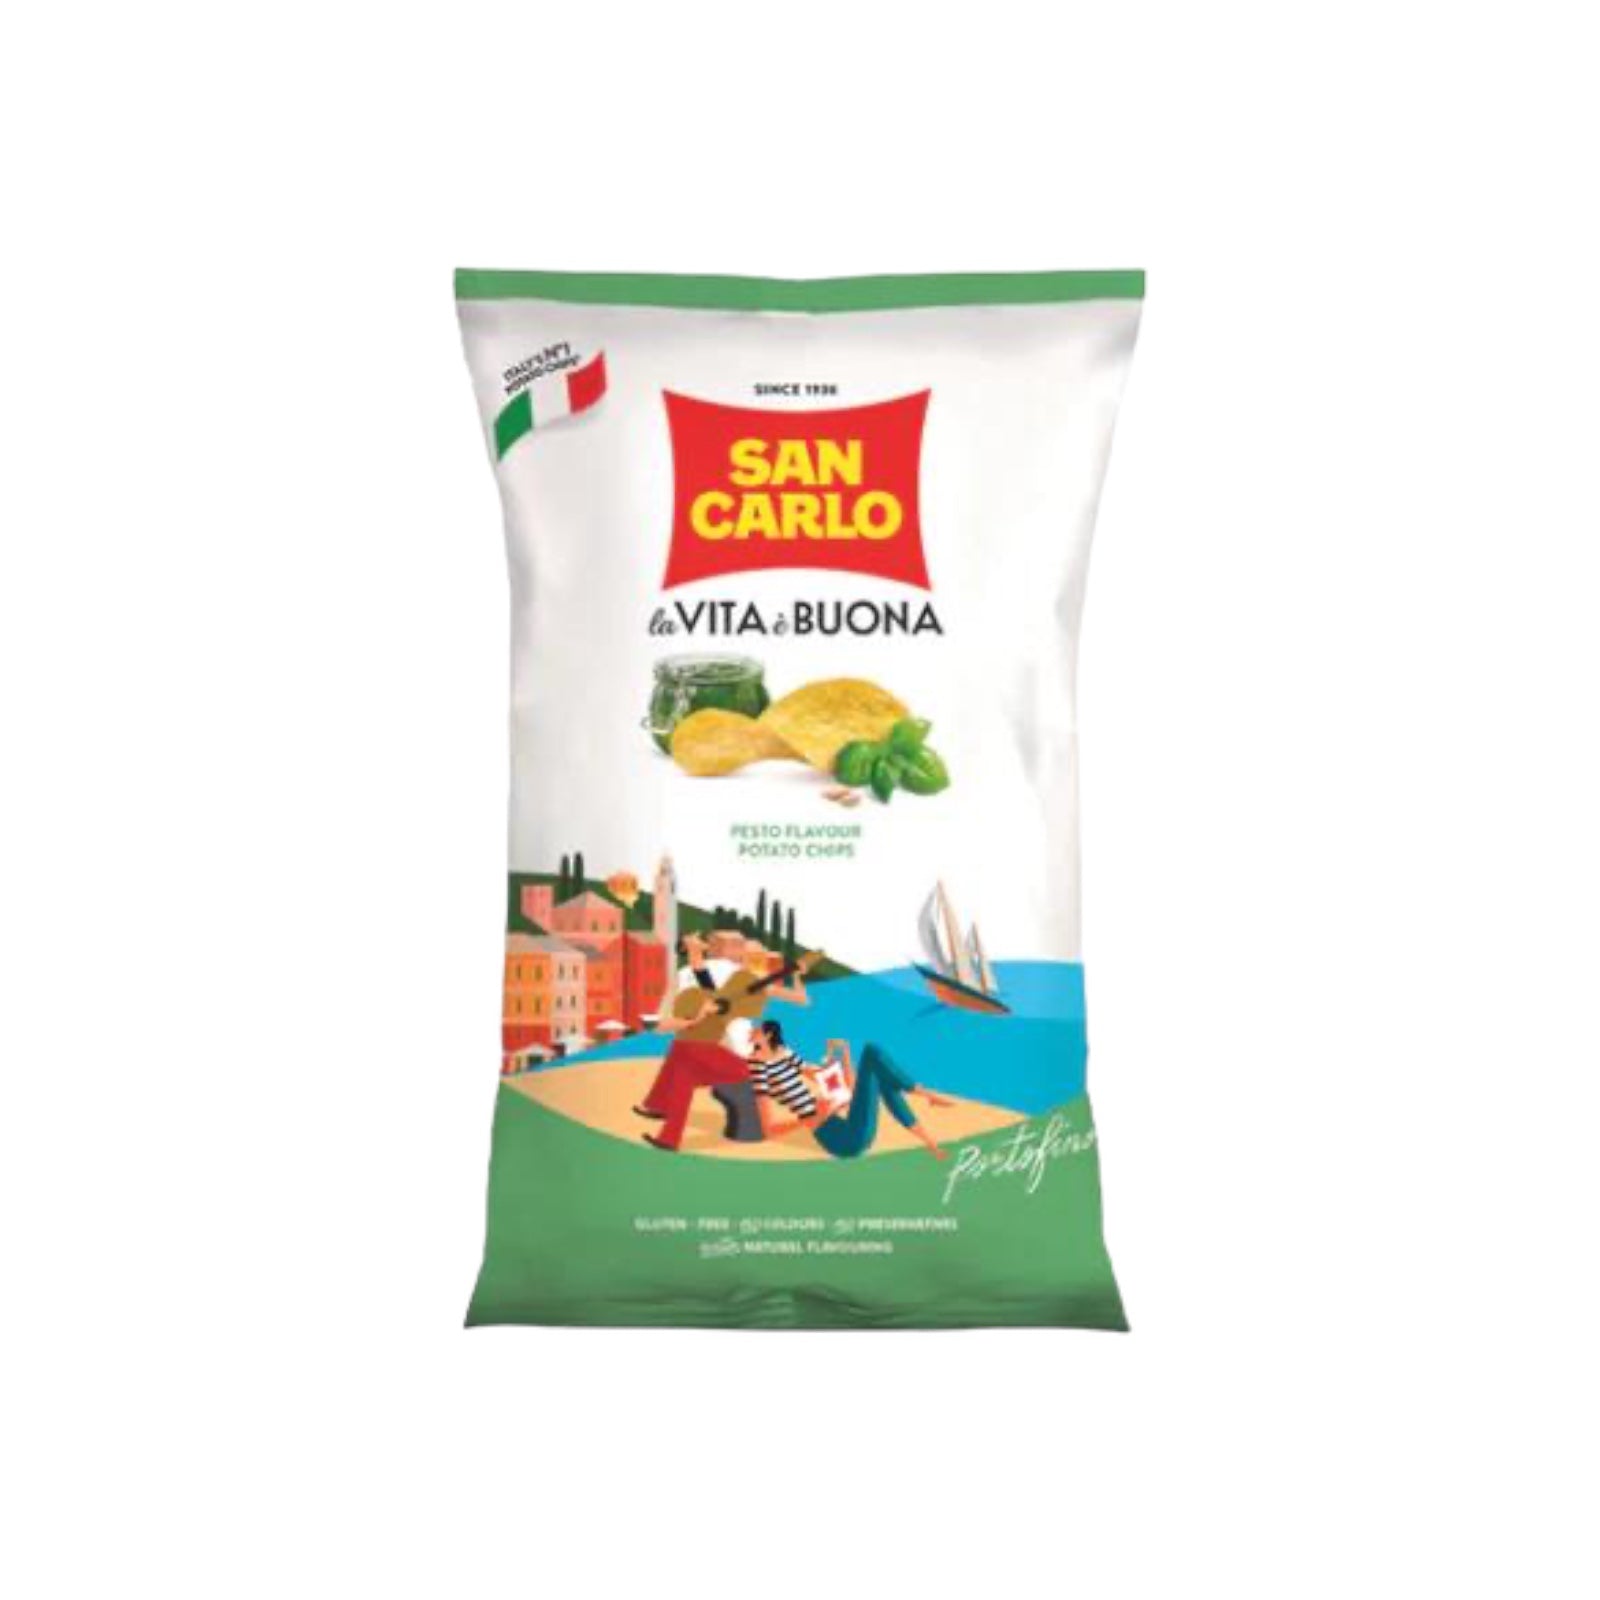 Pesto Flavour Potato Chips By San Carlo 50g